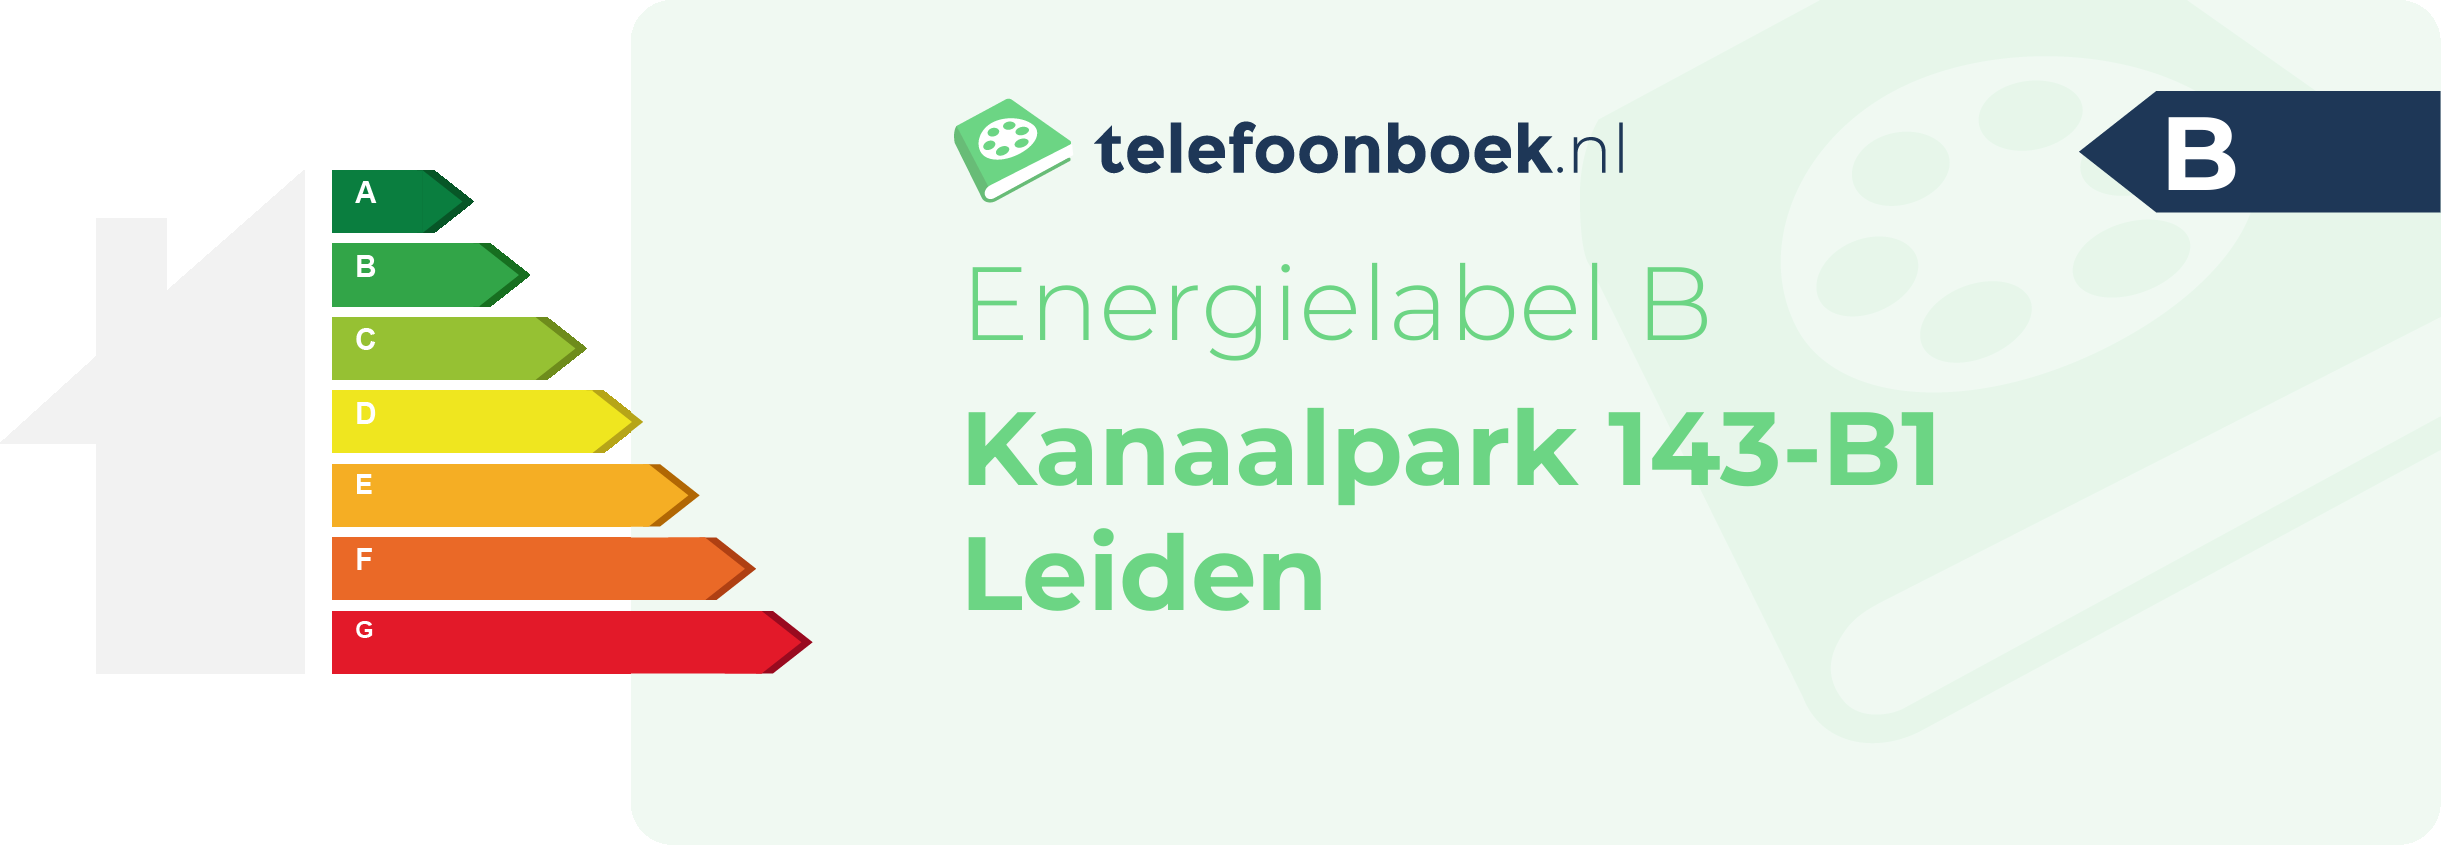 Energielabel Kanaalpark 143-B1 Leiden